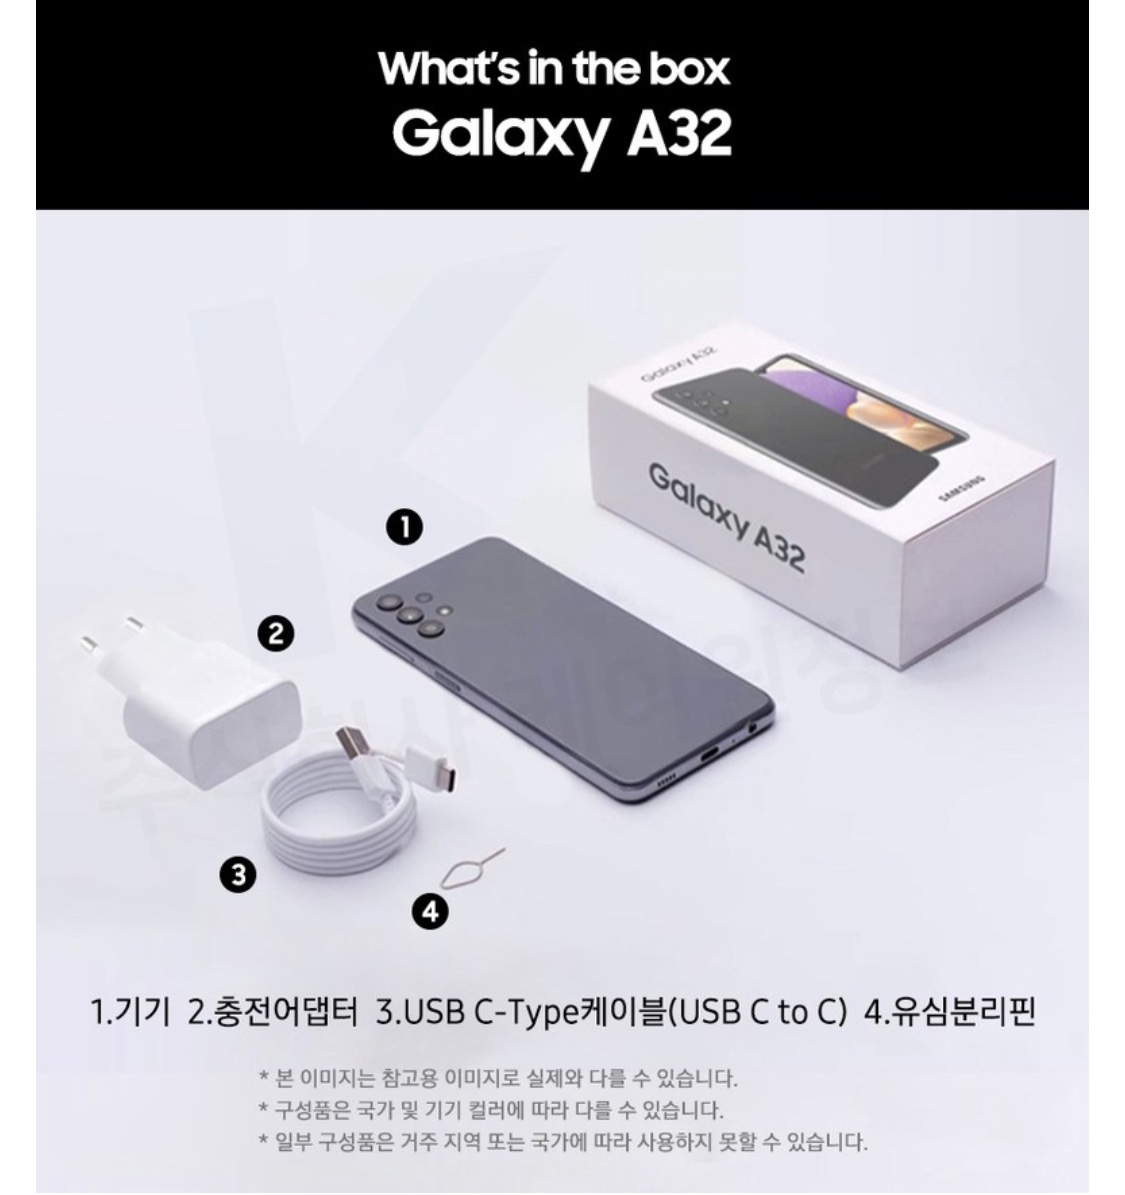 갤럭시 A32 제품 정보 (출처: 삼성닷컴)